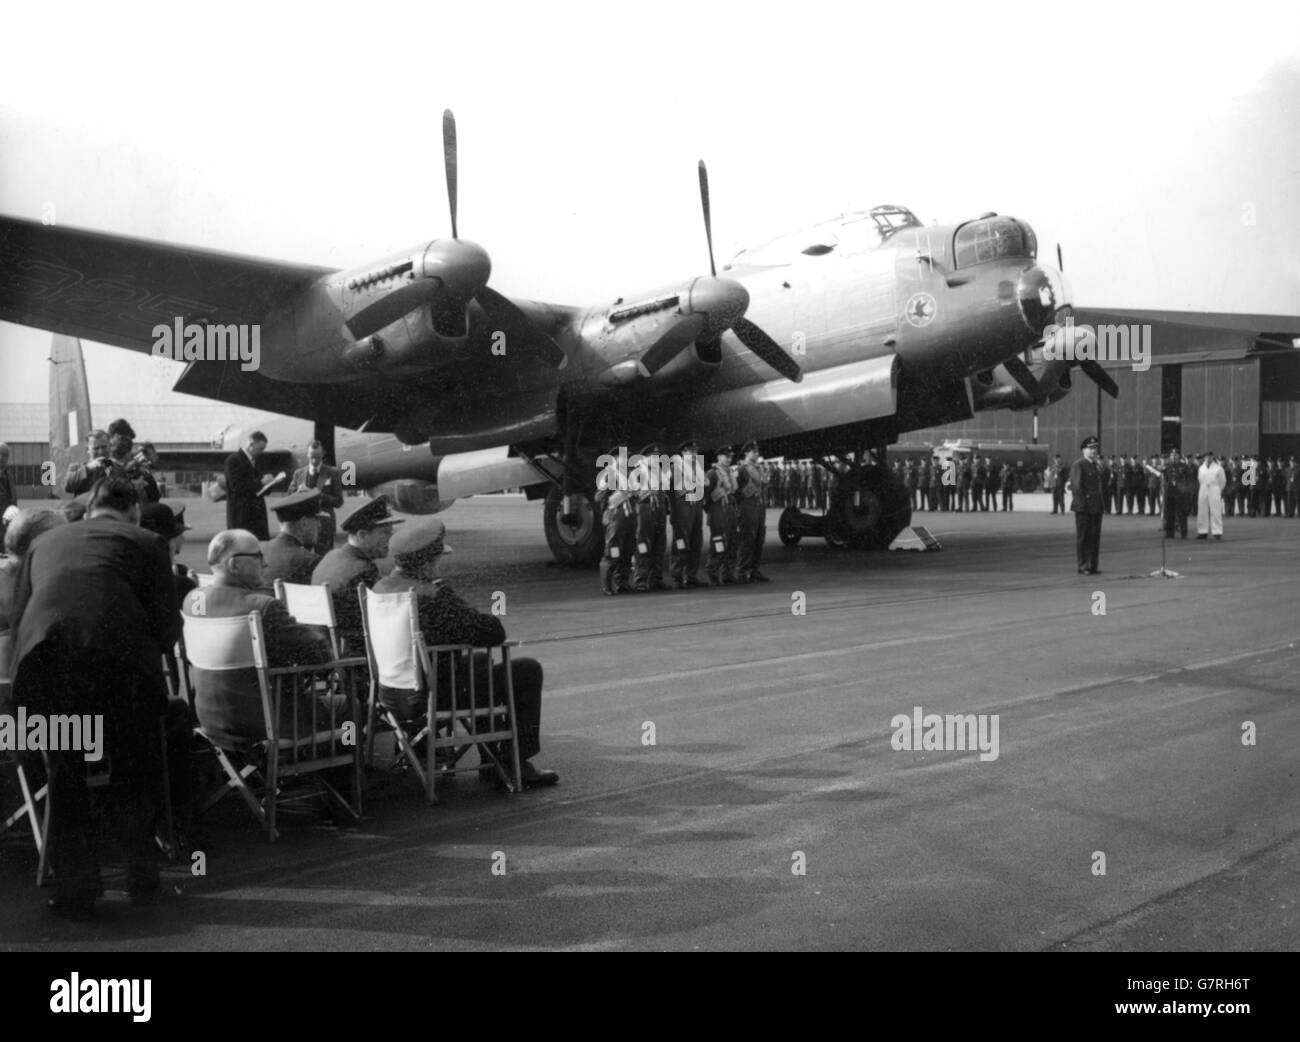 Die Feierlichkeit des Leave-Taking unter dem Schatten des letzten der Lancasters an der St. Mawgan Coastal Command Station, Cornwall. Air Marshall Sir Bryan Reynolds, Coastal Command, gab die valedictory Adresse. Bomberpiloten, die die Lancaster-Razzien geflogen hatten, und hochrangige RAF-Offiziere nahmen Teil, als das Flugzeug zu den Werften der Abbrecher flog. Die viermotorige Lancaster D für Delta wurde 1953 vom Bomber Command zurückgezogen und seitdem von Besatzungen des Coastal Command geflogen. Die Lancaster Bombers flogen im Zweiten Weltkrieg mehr als 156,000 Sprengstoffbomben und warfen über 600,000 Tonnen hochexplosive Bomben ab. Stockfoto